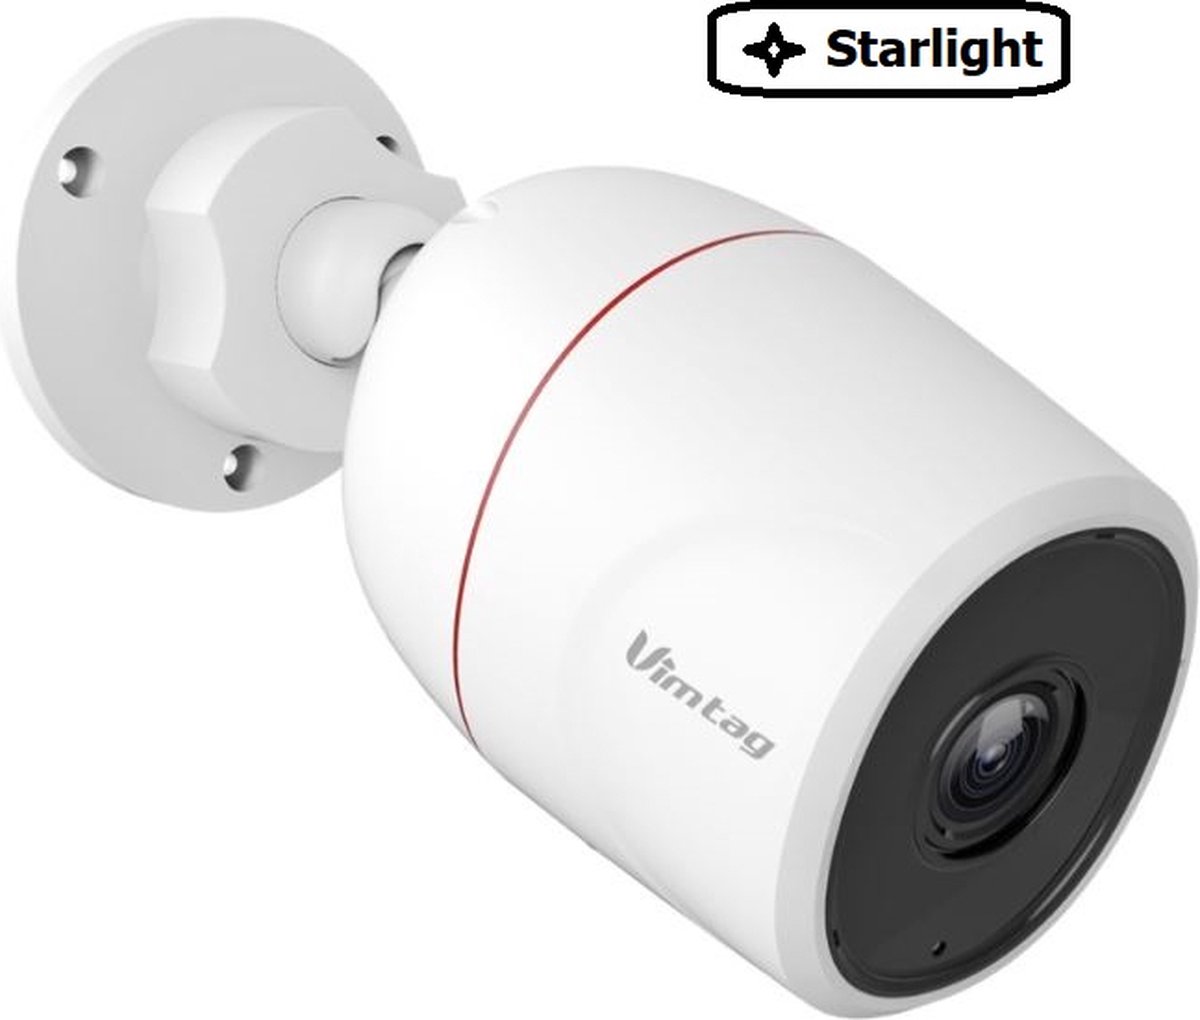 Vimtag VT839 - beveiligingscamera voor buiten - camera beveiliging - starlight nachtzicht - digitale zoom